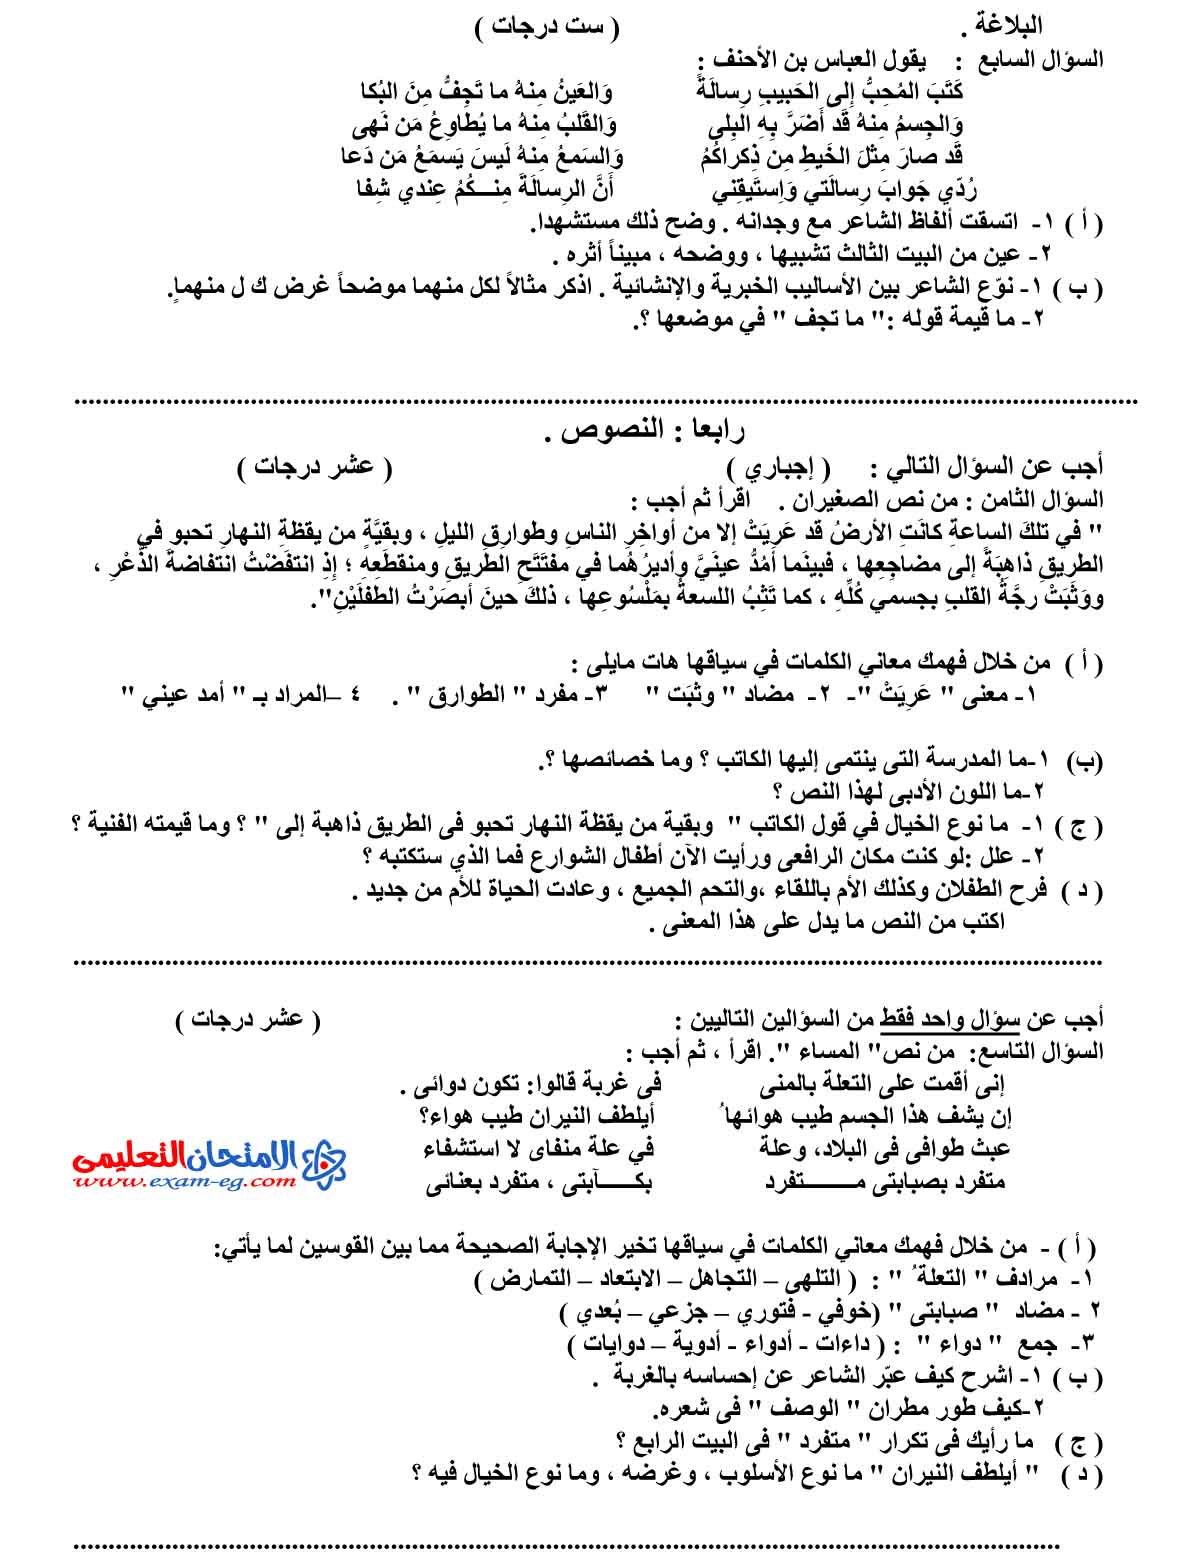 امتحان اللغة العربية 4 - مدرسة اون لاين (3)